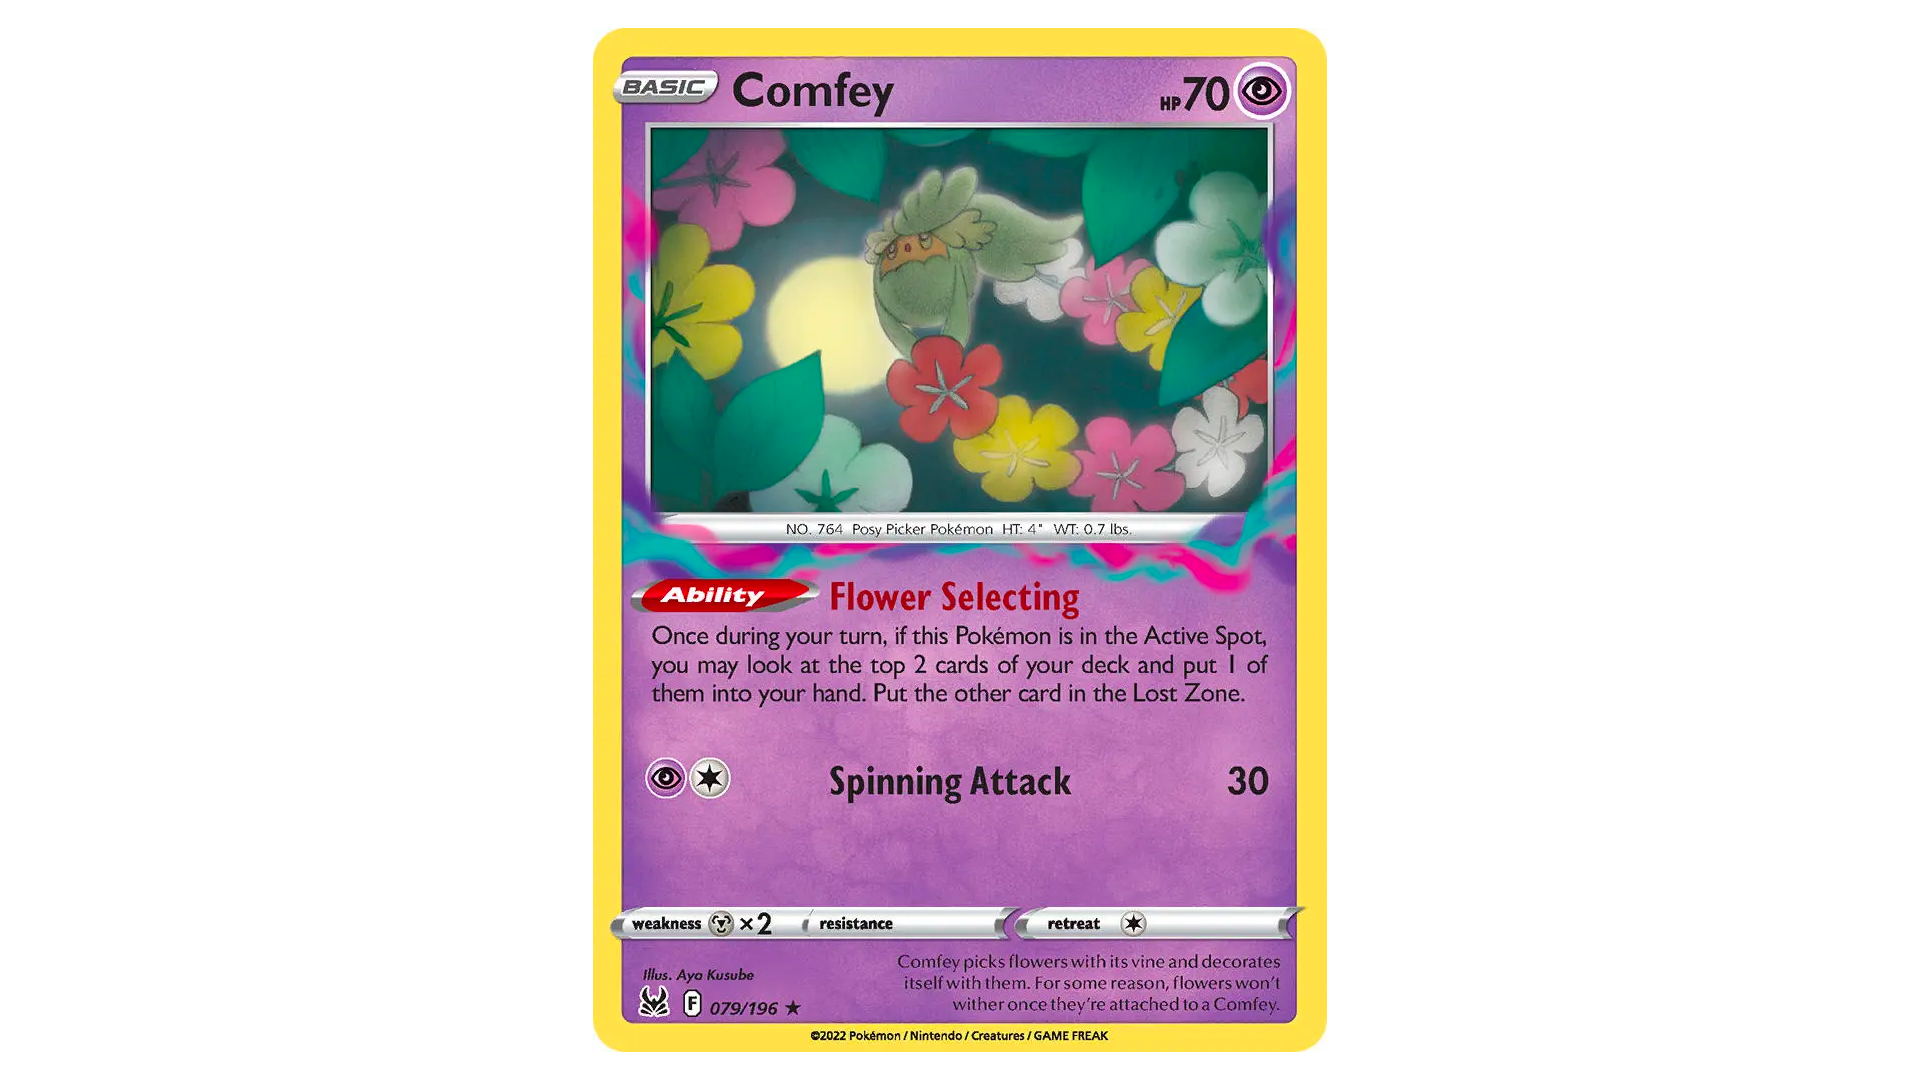 Comfey Lost Origin Online Digital Card Pokemon TCGO 079/196 